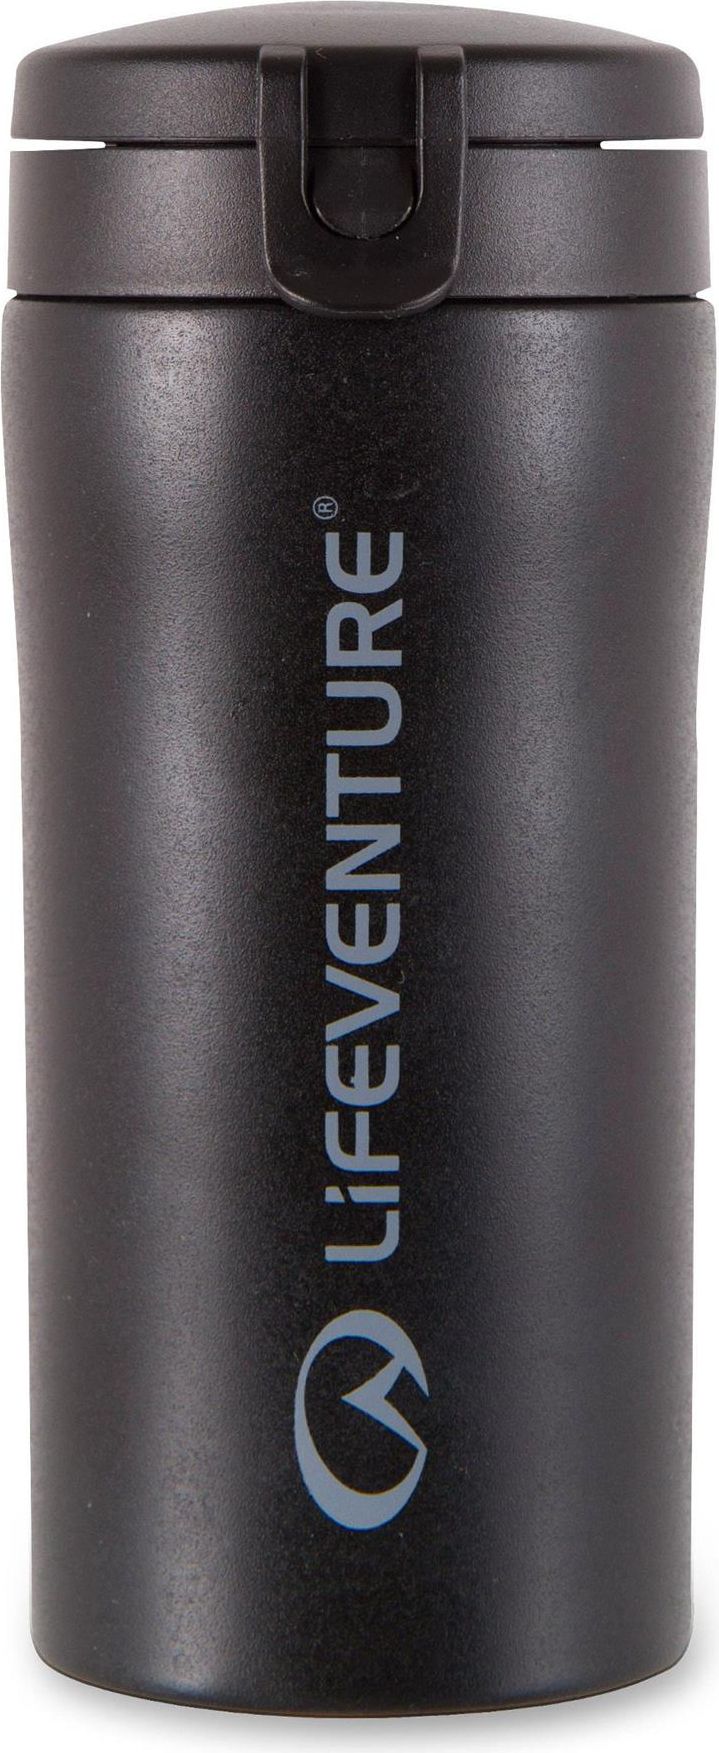 Cupa termica impermeabila Lifeventure FlipTop, neagra, LM76120